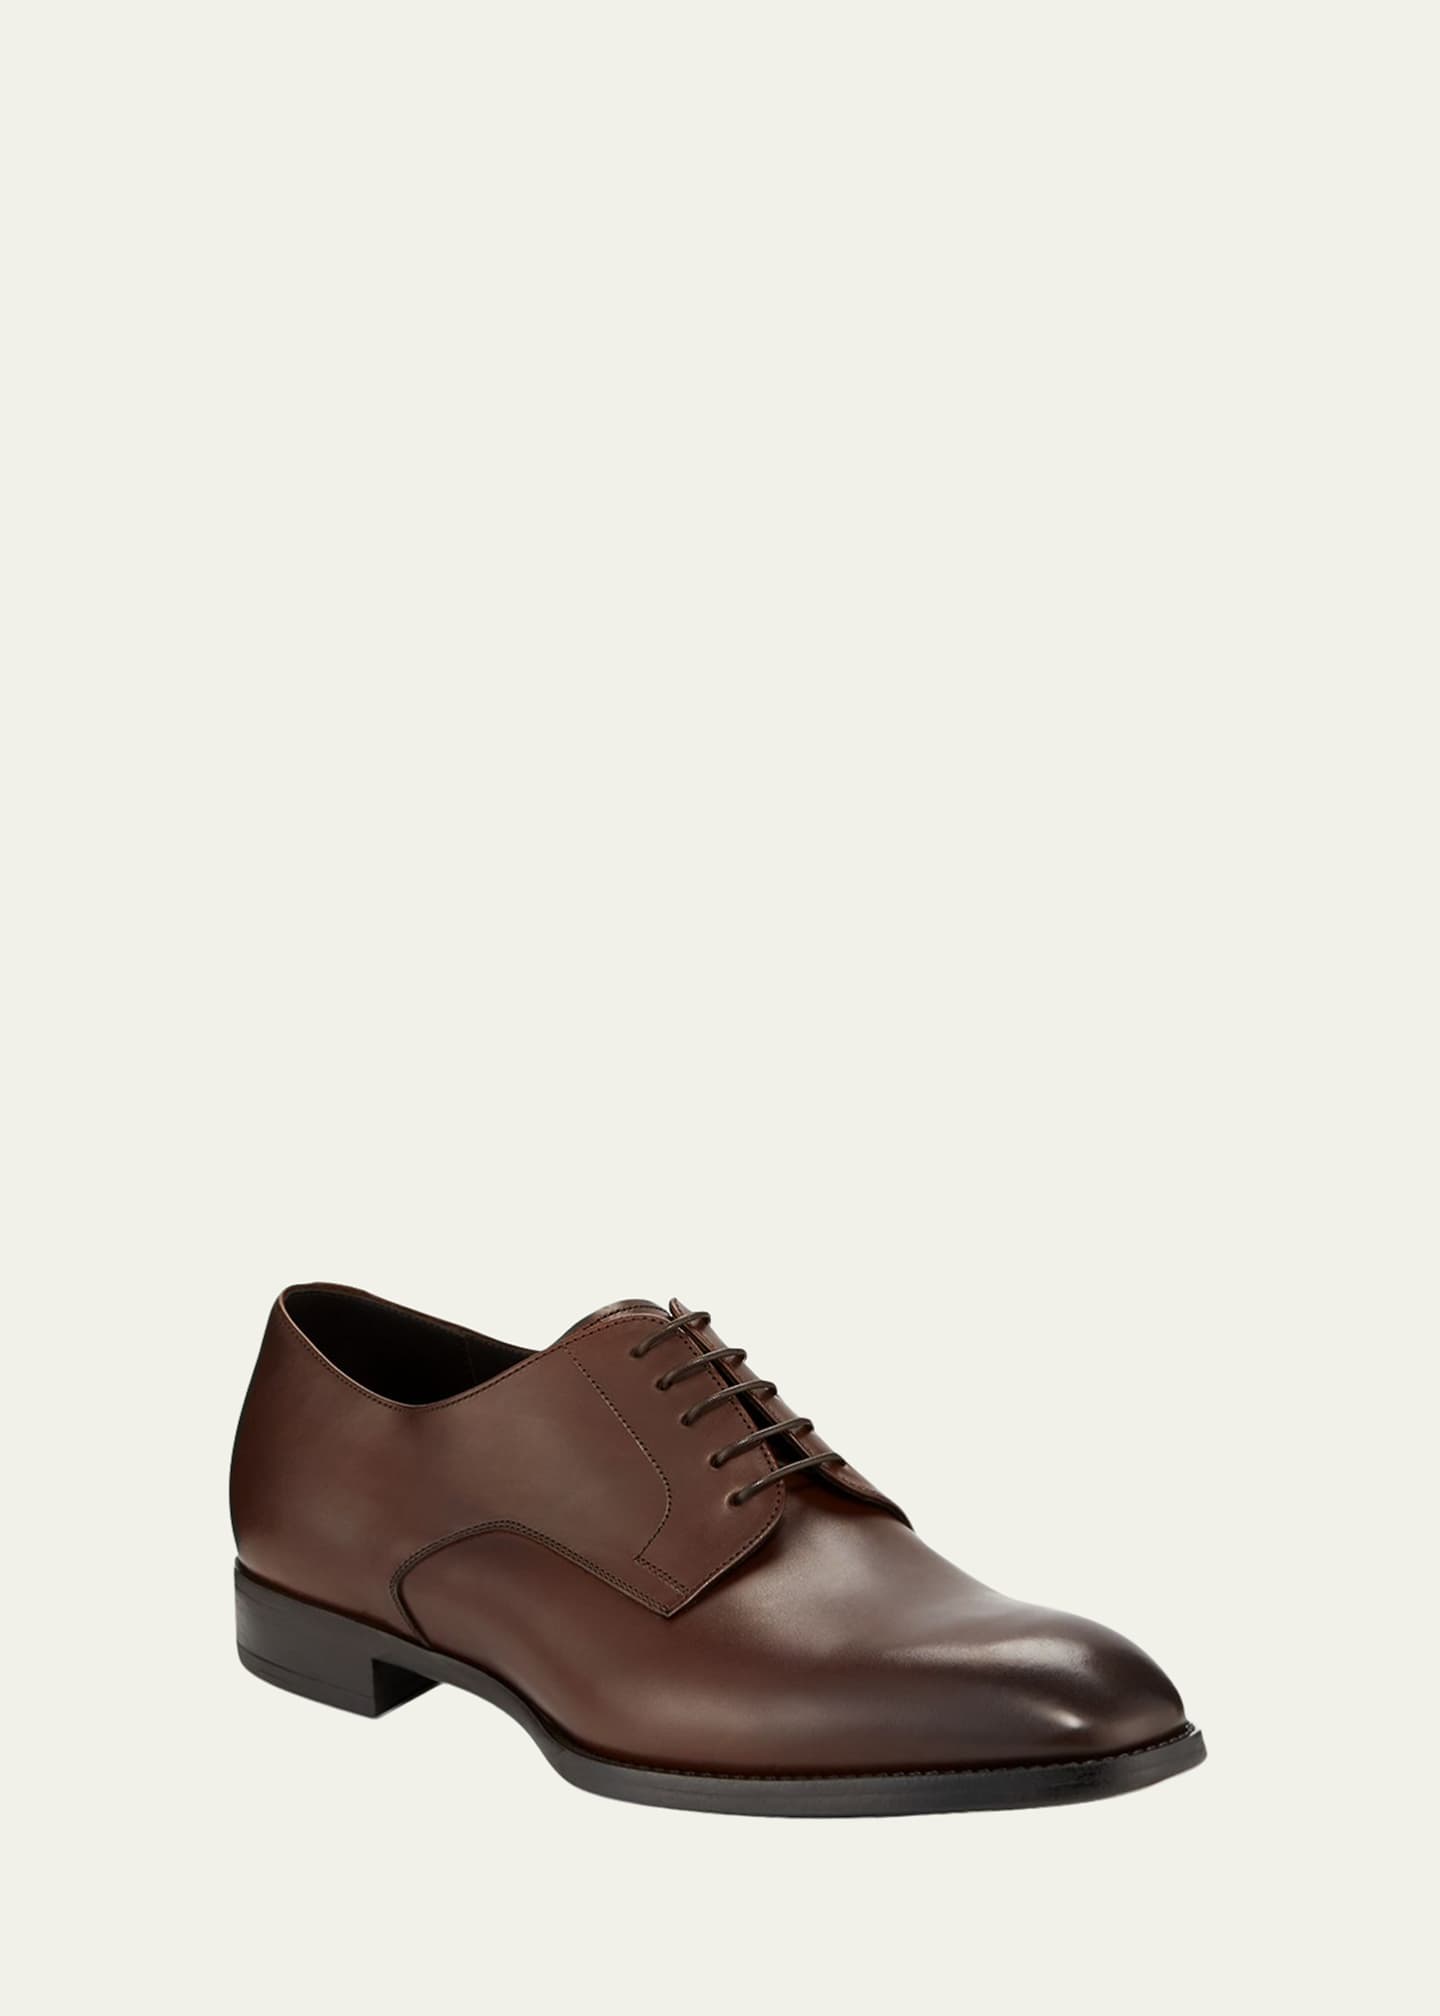 Giorgio Armani Men's Calf Leather Derby Shoes - Bergdorf Goodman